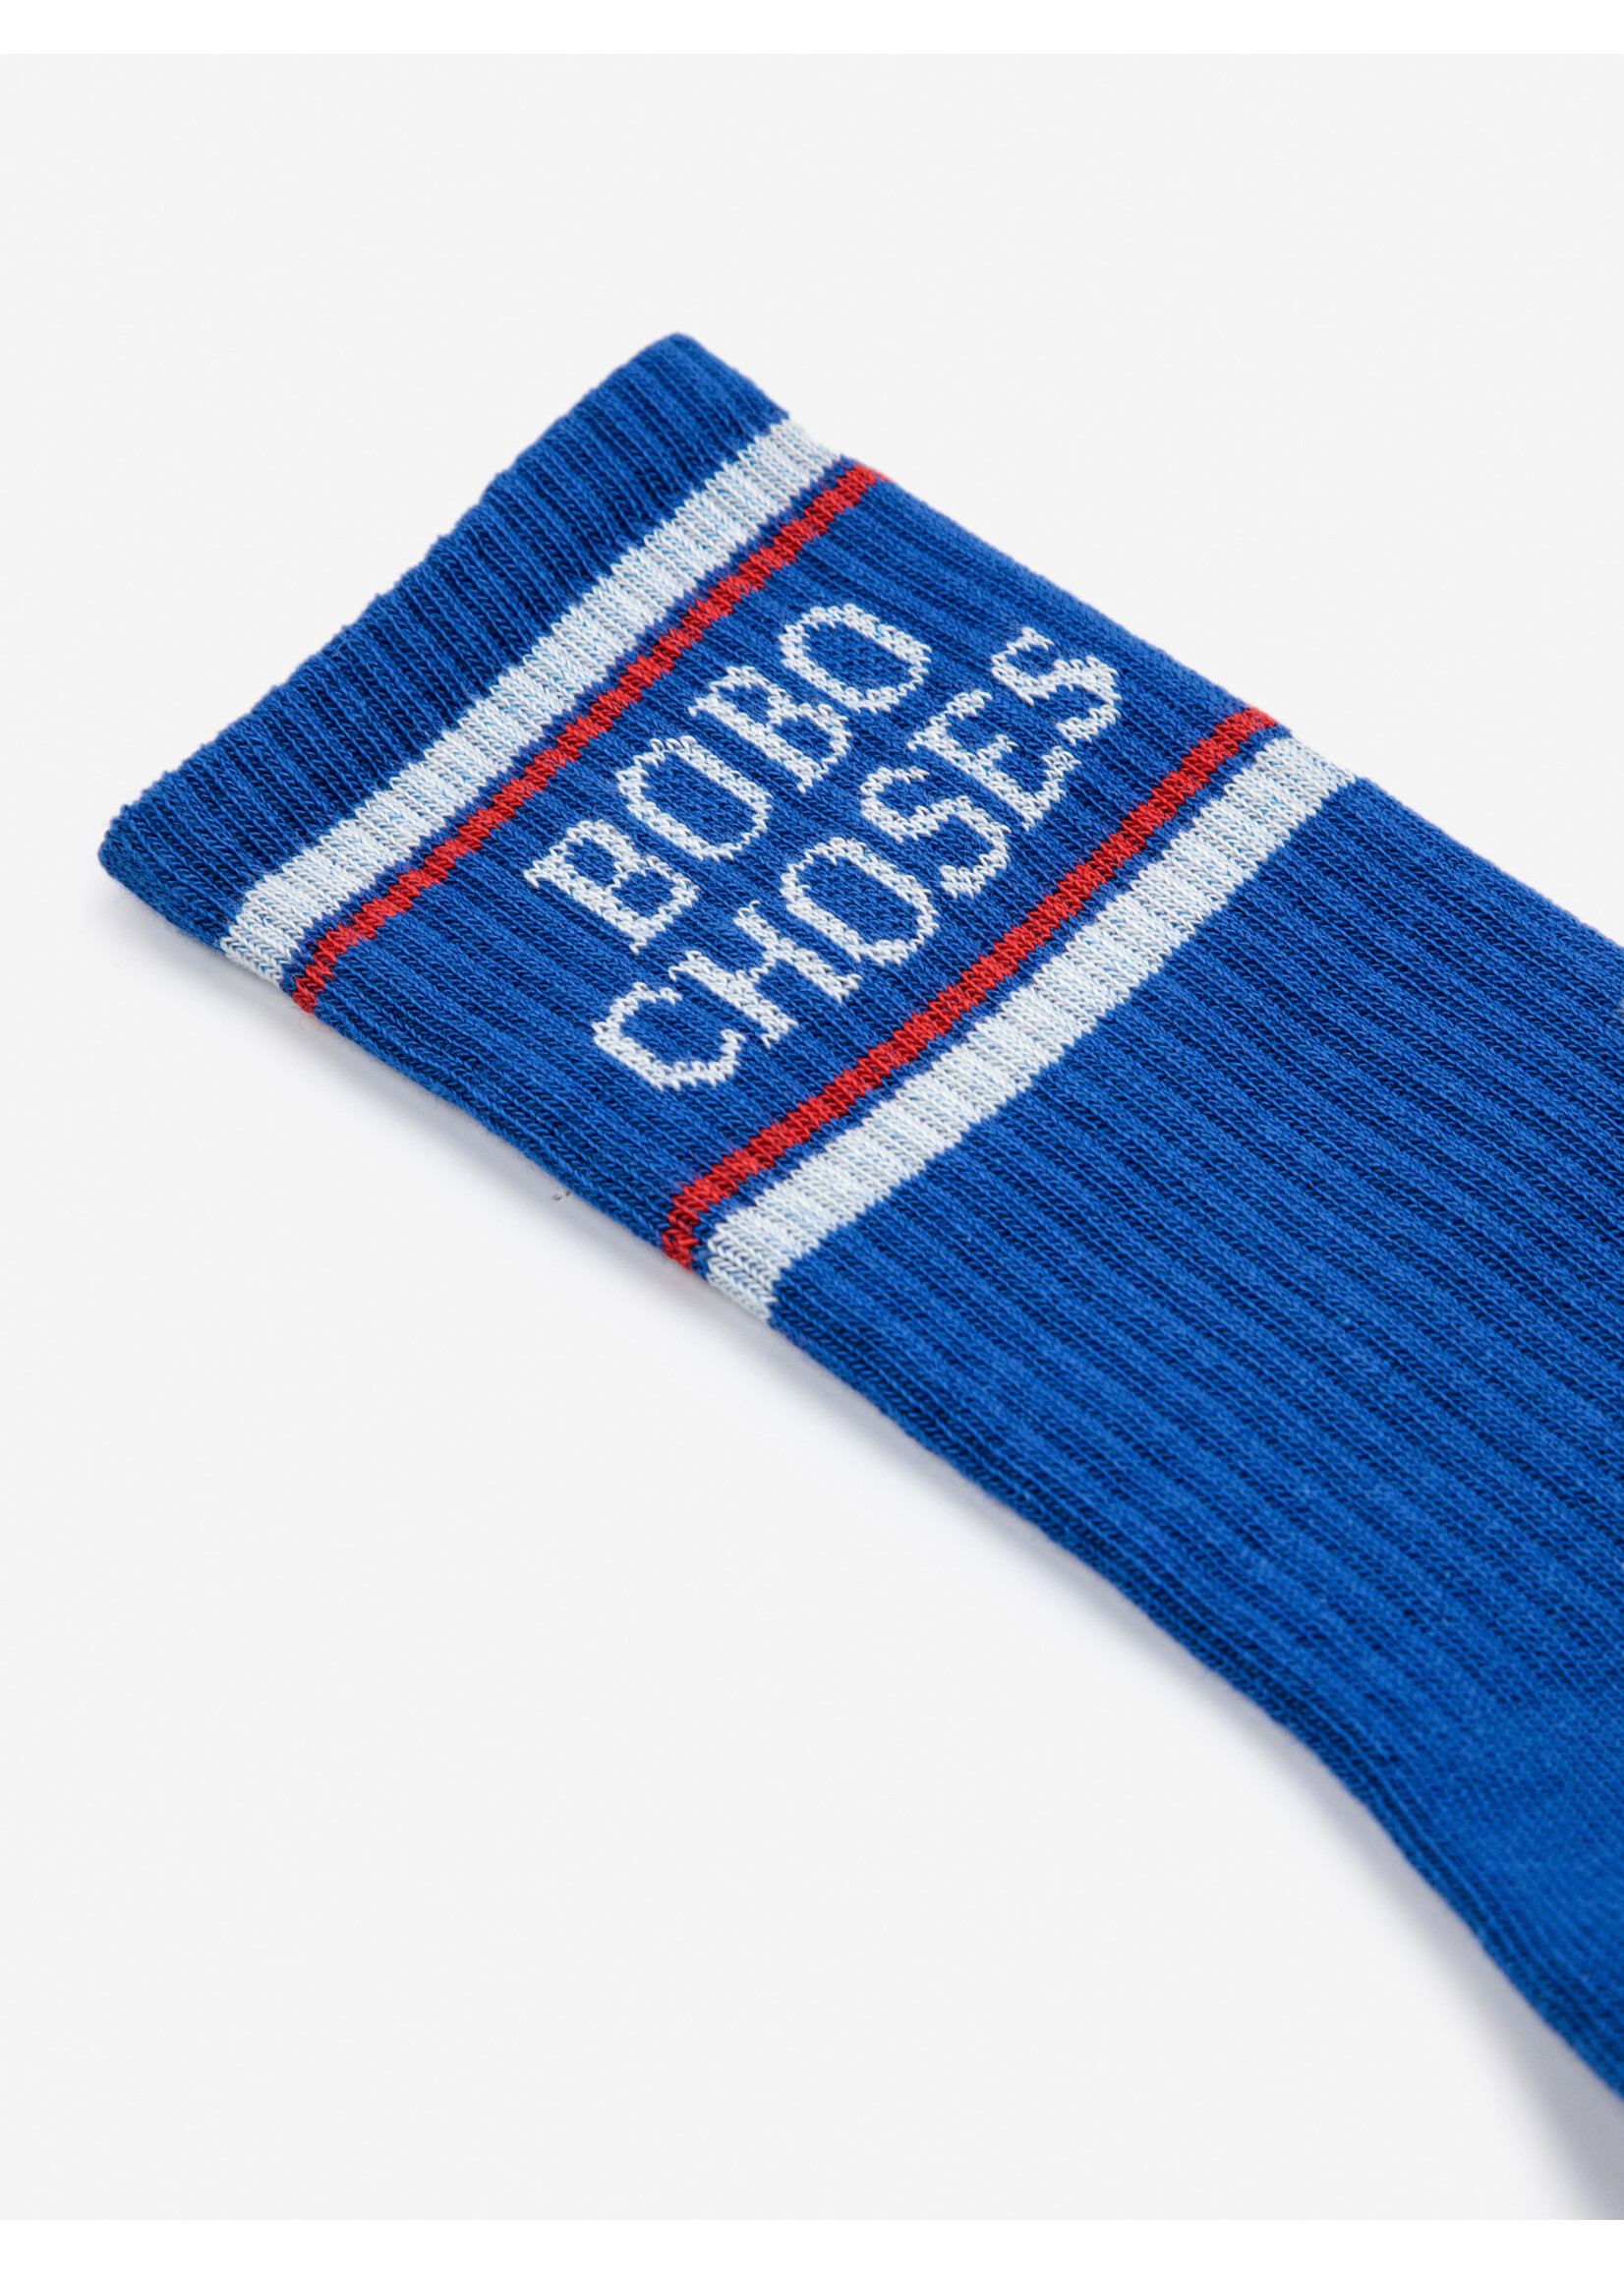 BOBO CHOSES BOBO CHOSES socks LONG